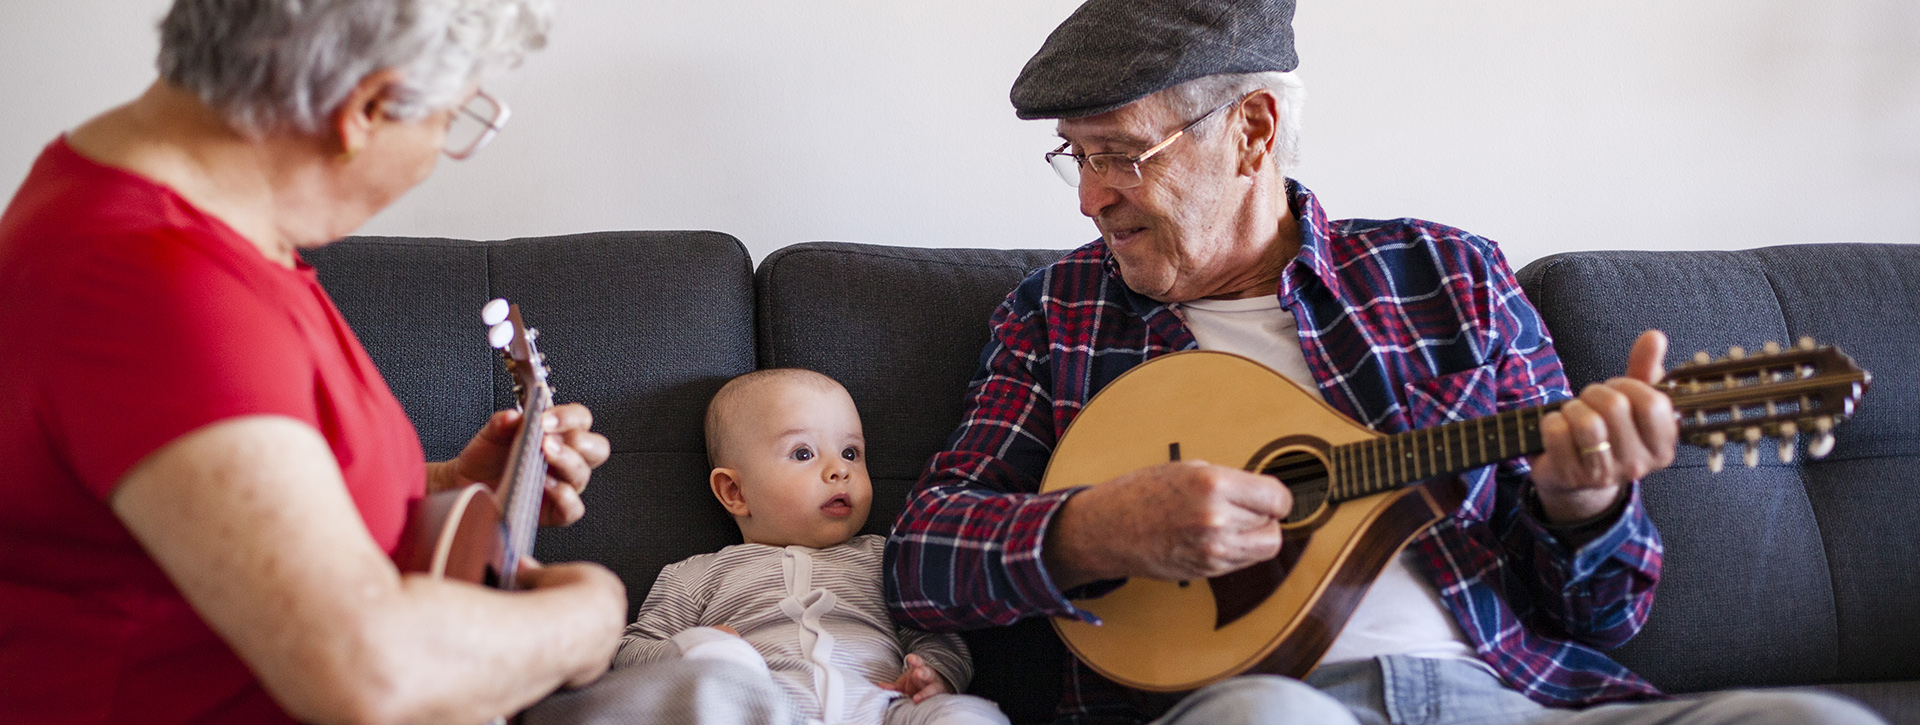 Vanhempi mies ja nainen soittavat vauvalle kitaraa.